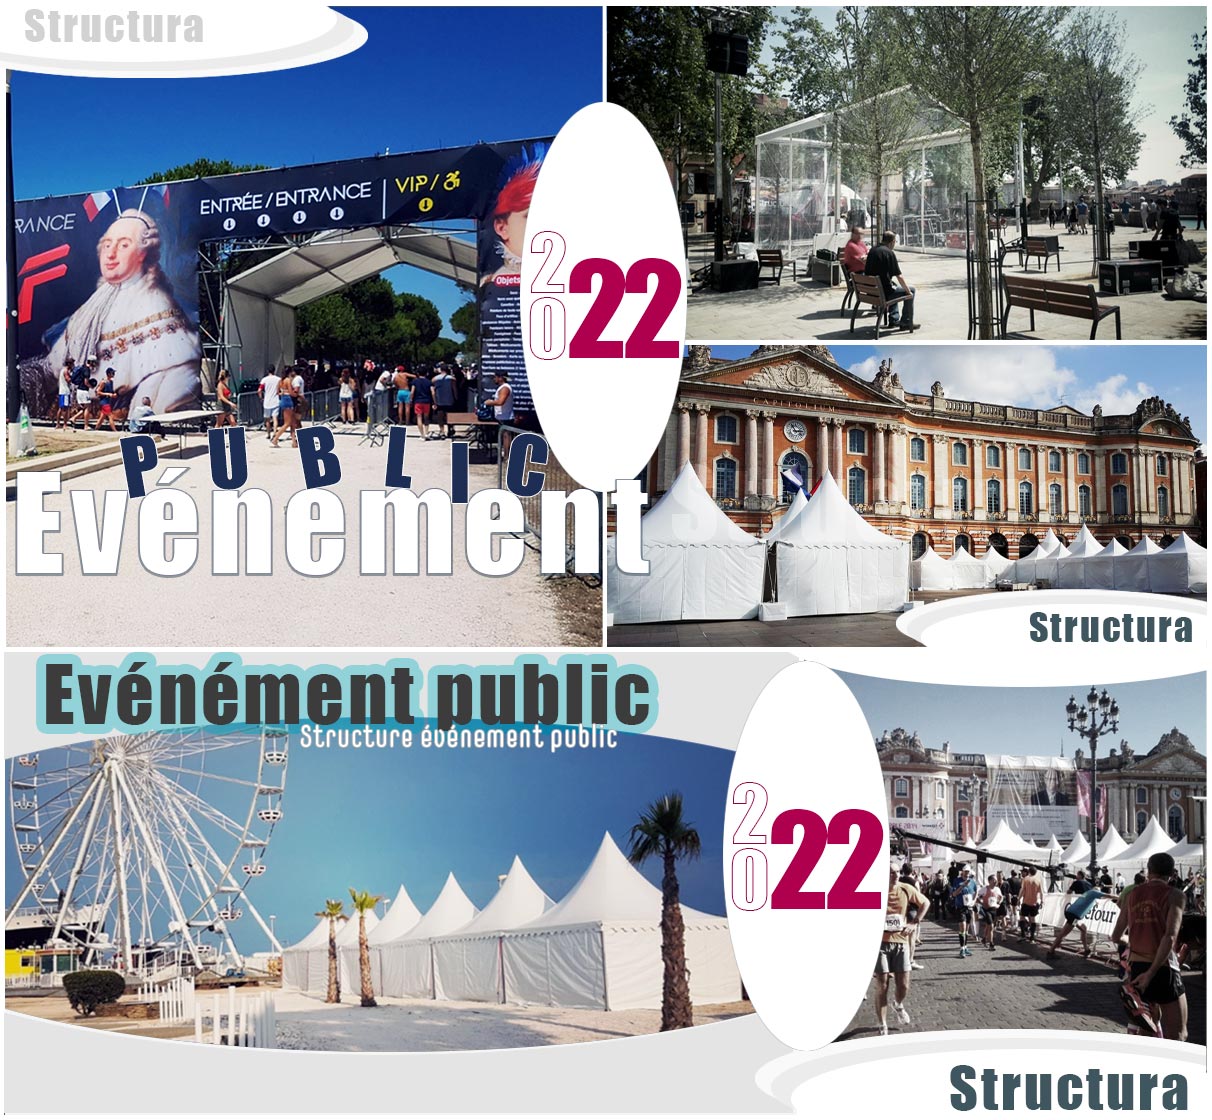 pour vos événements publics location et vente de chapiteau, tente, pagode et matériels de réception sur toute la France par Structura